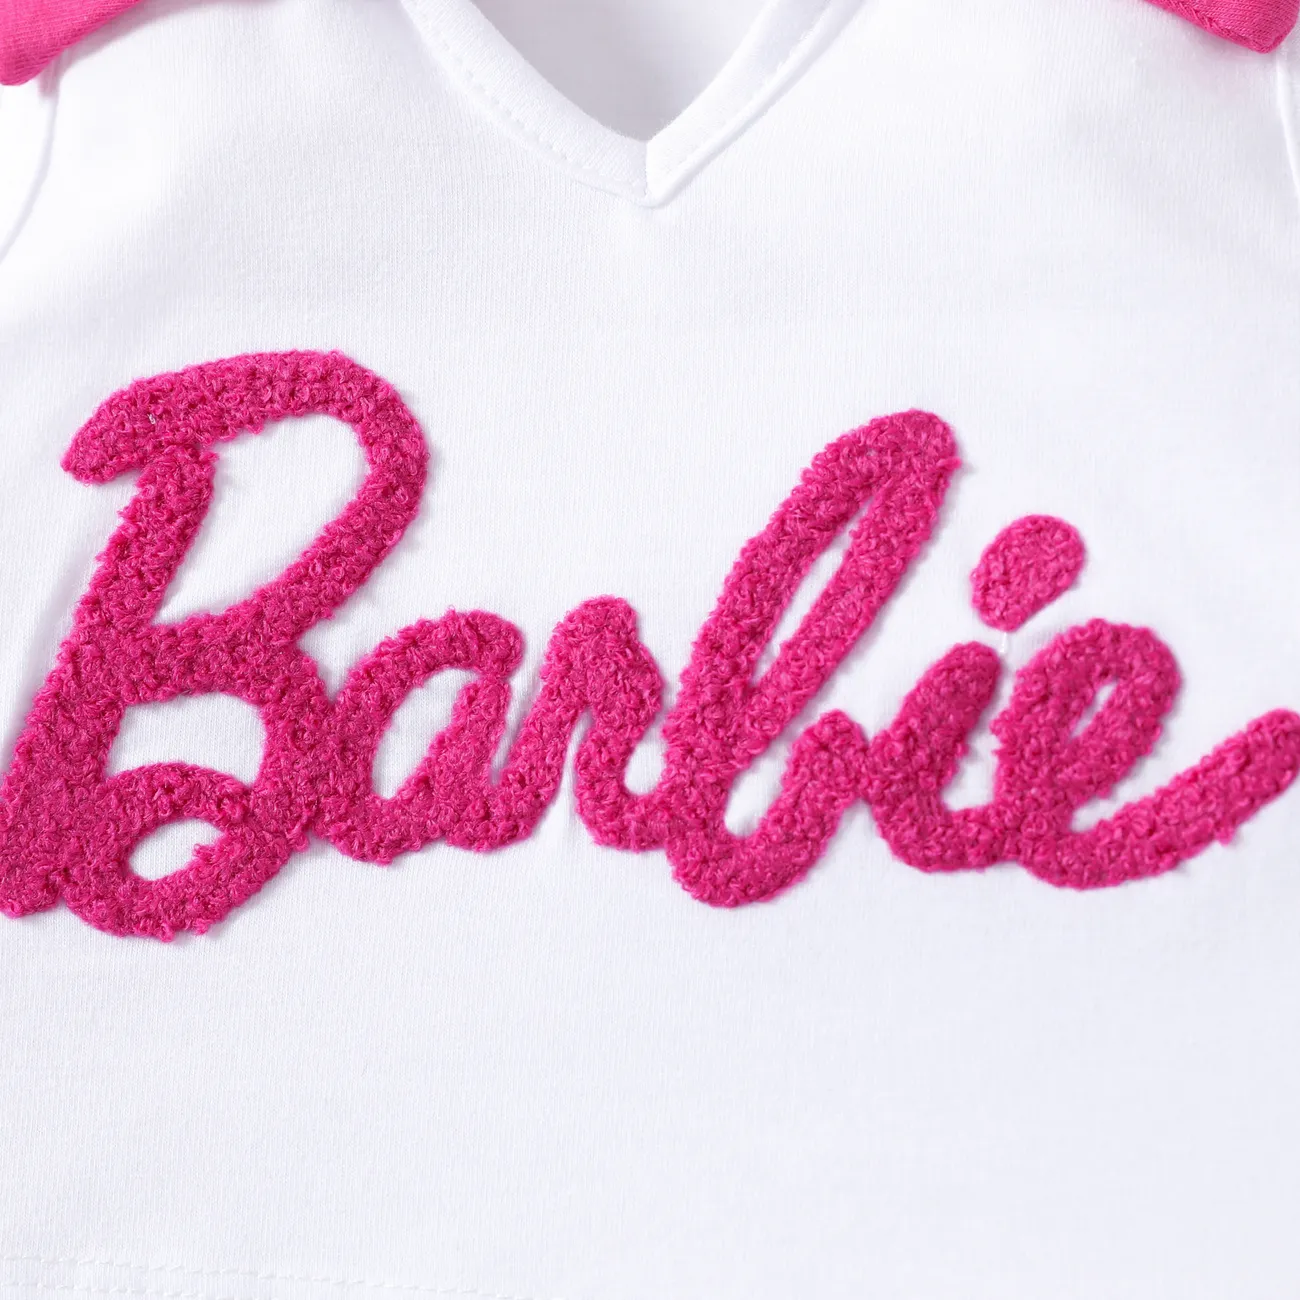 Barbie 2 unidades Chica Cuello de solapa Dulce Conjuntos rosa blanca big image 1